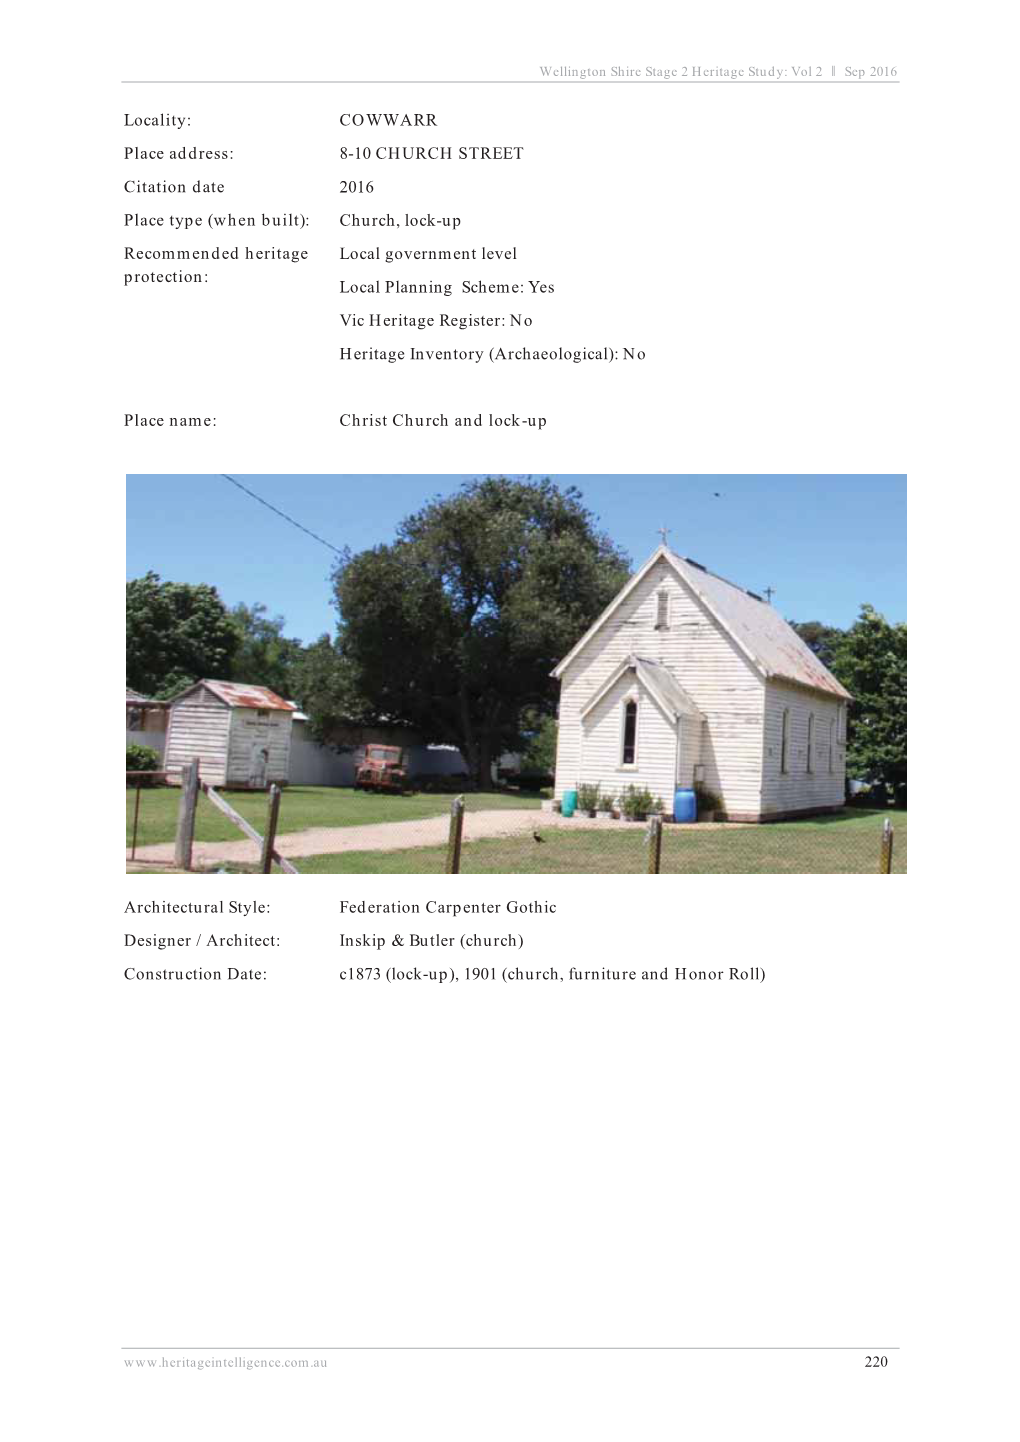 Locality: COWWARR Place Address: 8-10 CHURCH STREET Citation